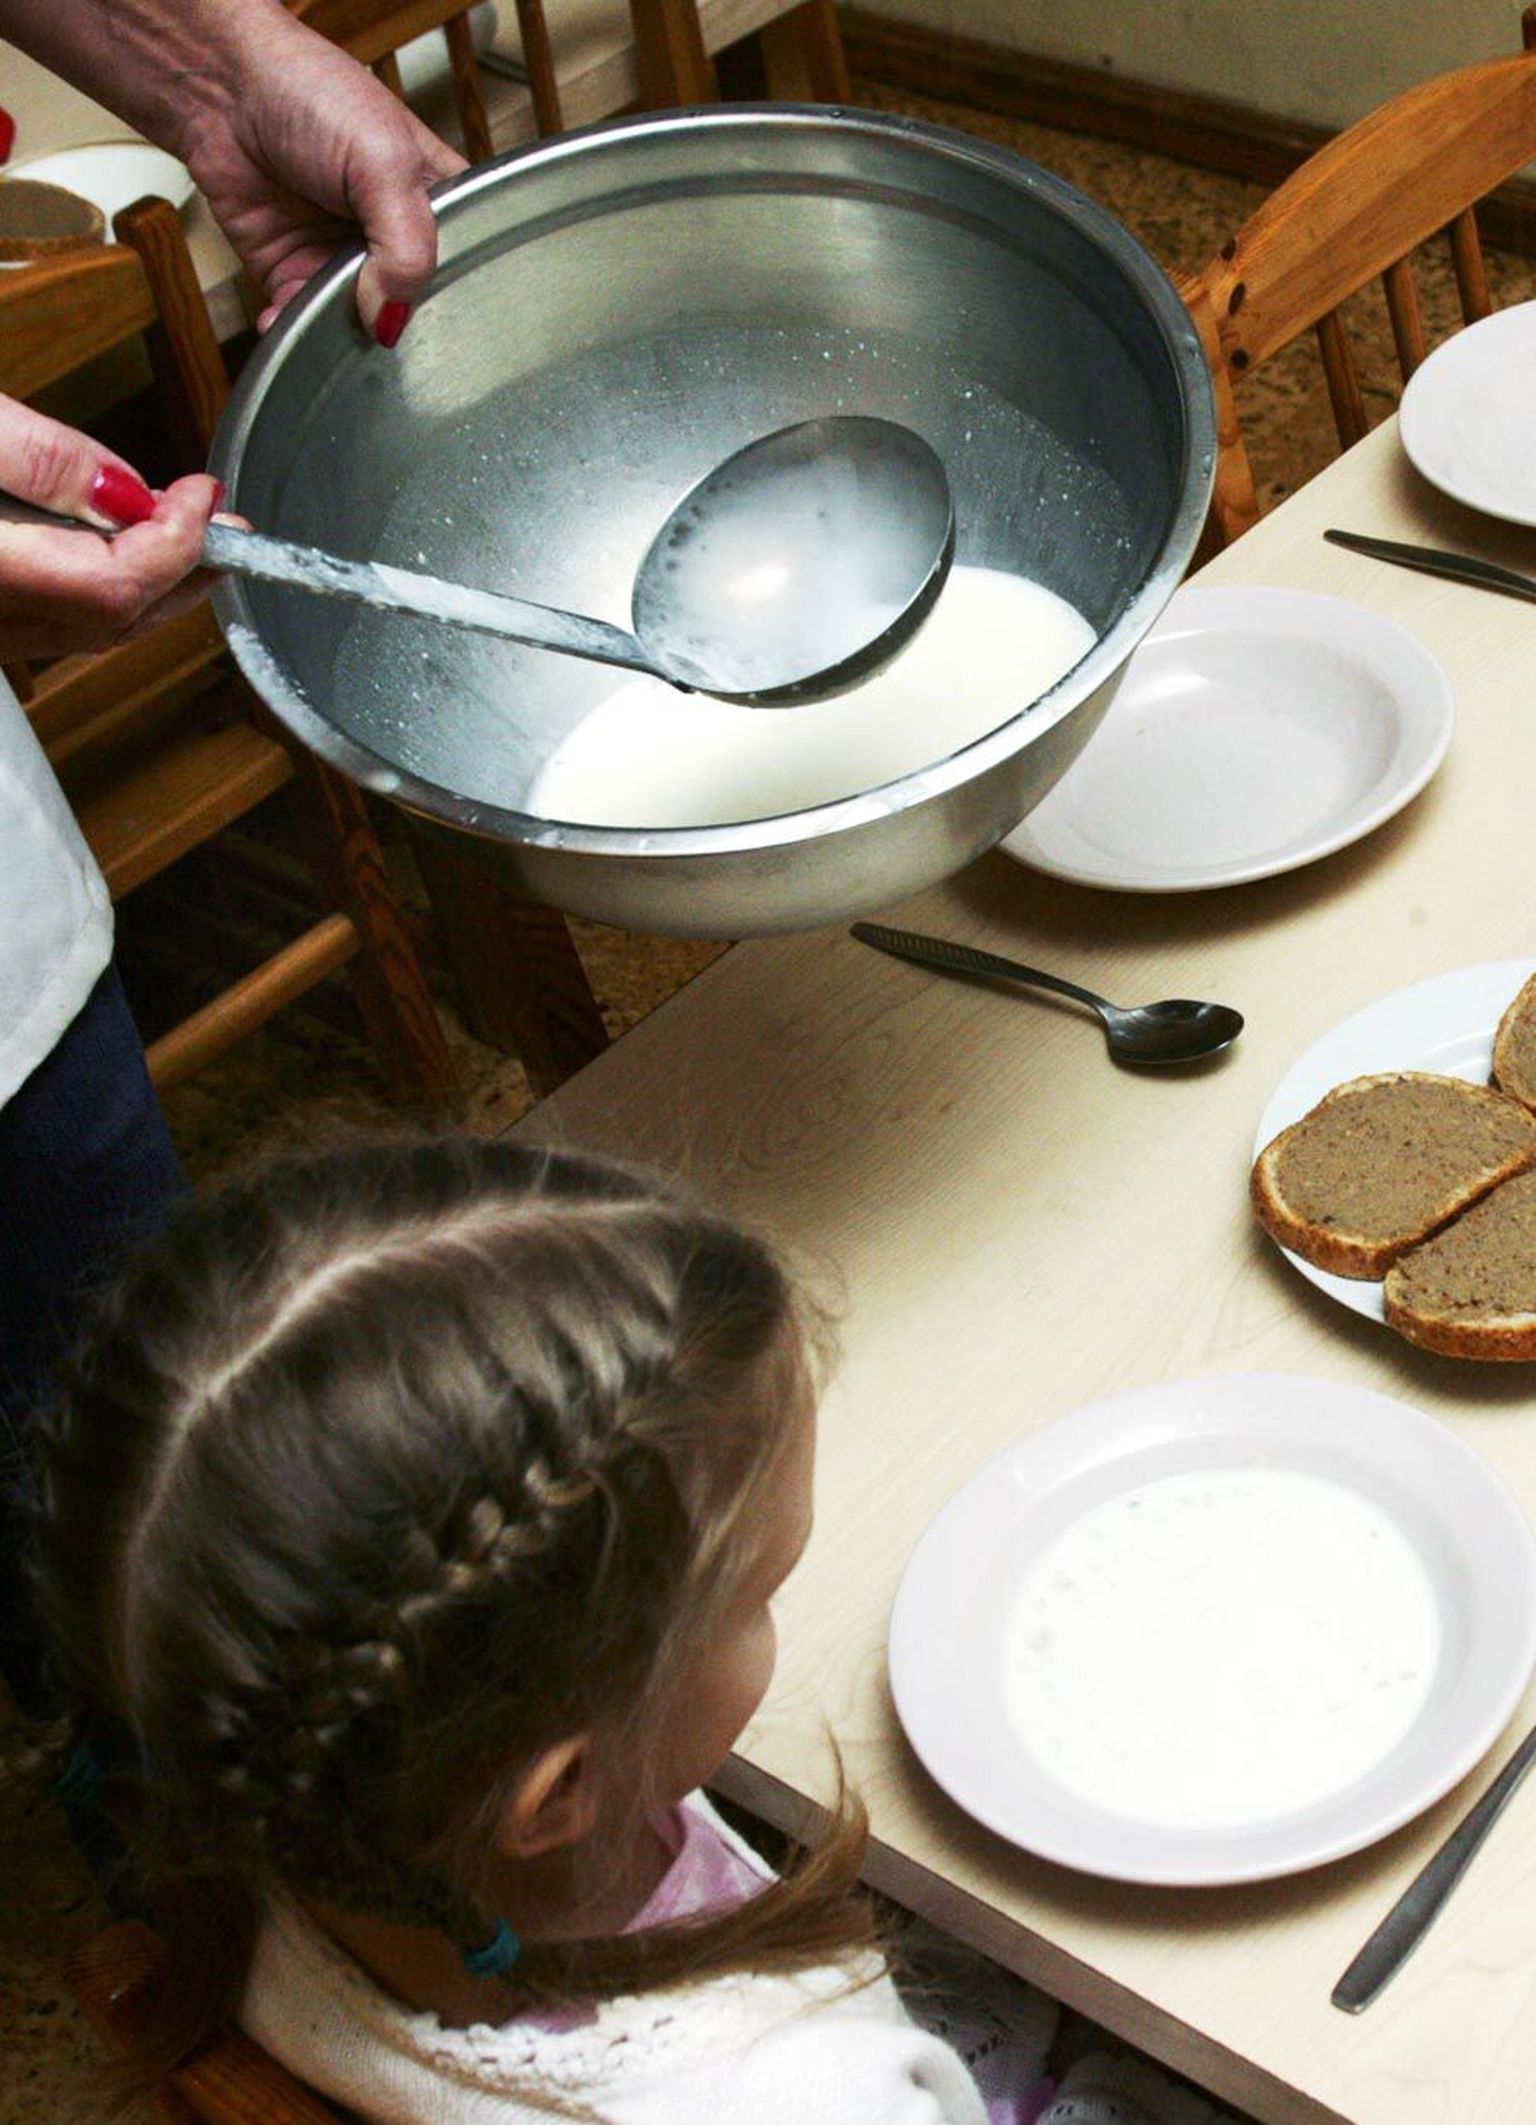 Tallinna Jaan Poska lasteaias õnnestub toidu pealt kokku hoida tänu piimale – see on odav, aga lapsed saavad oma kalorid kätte.